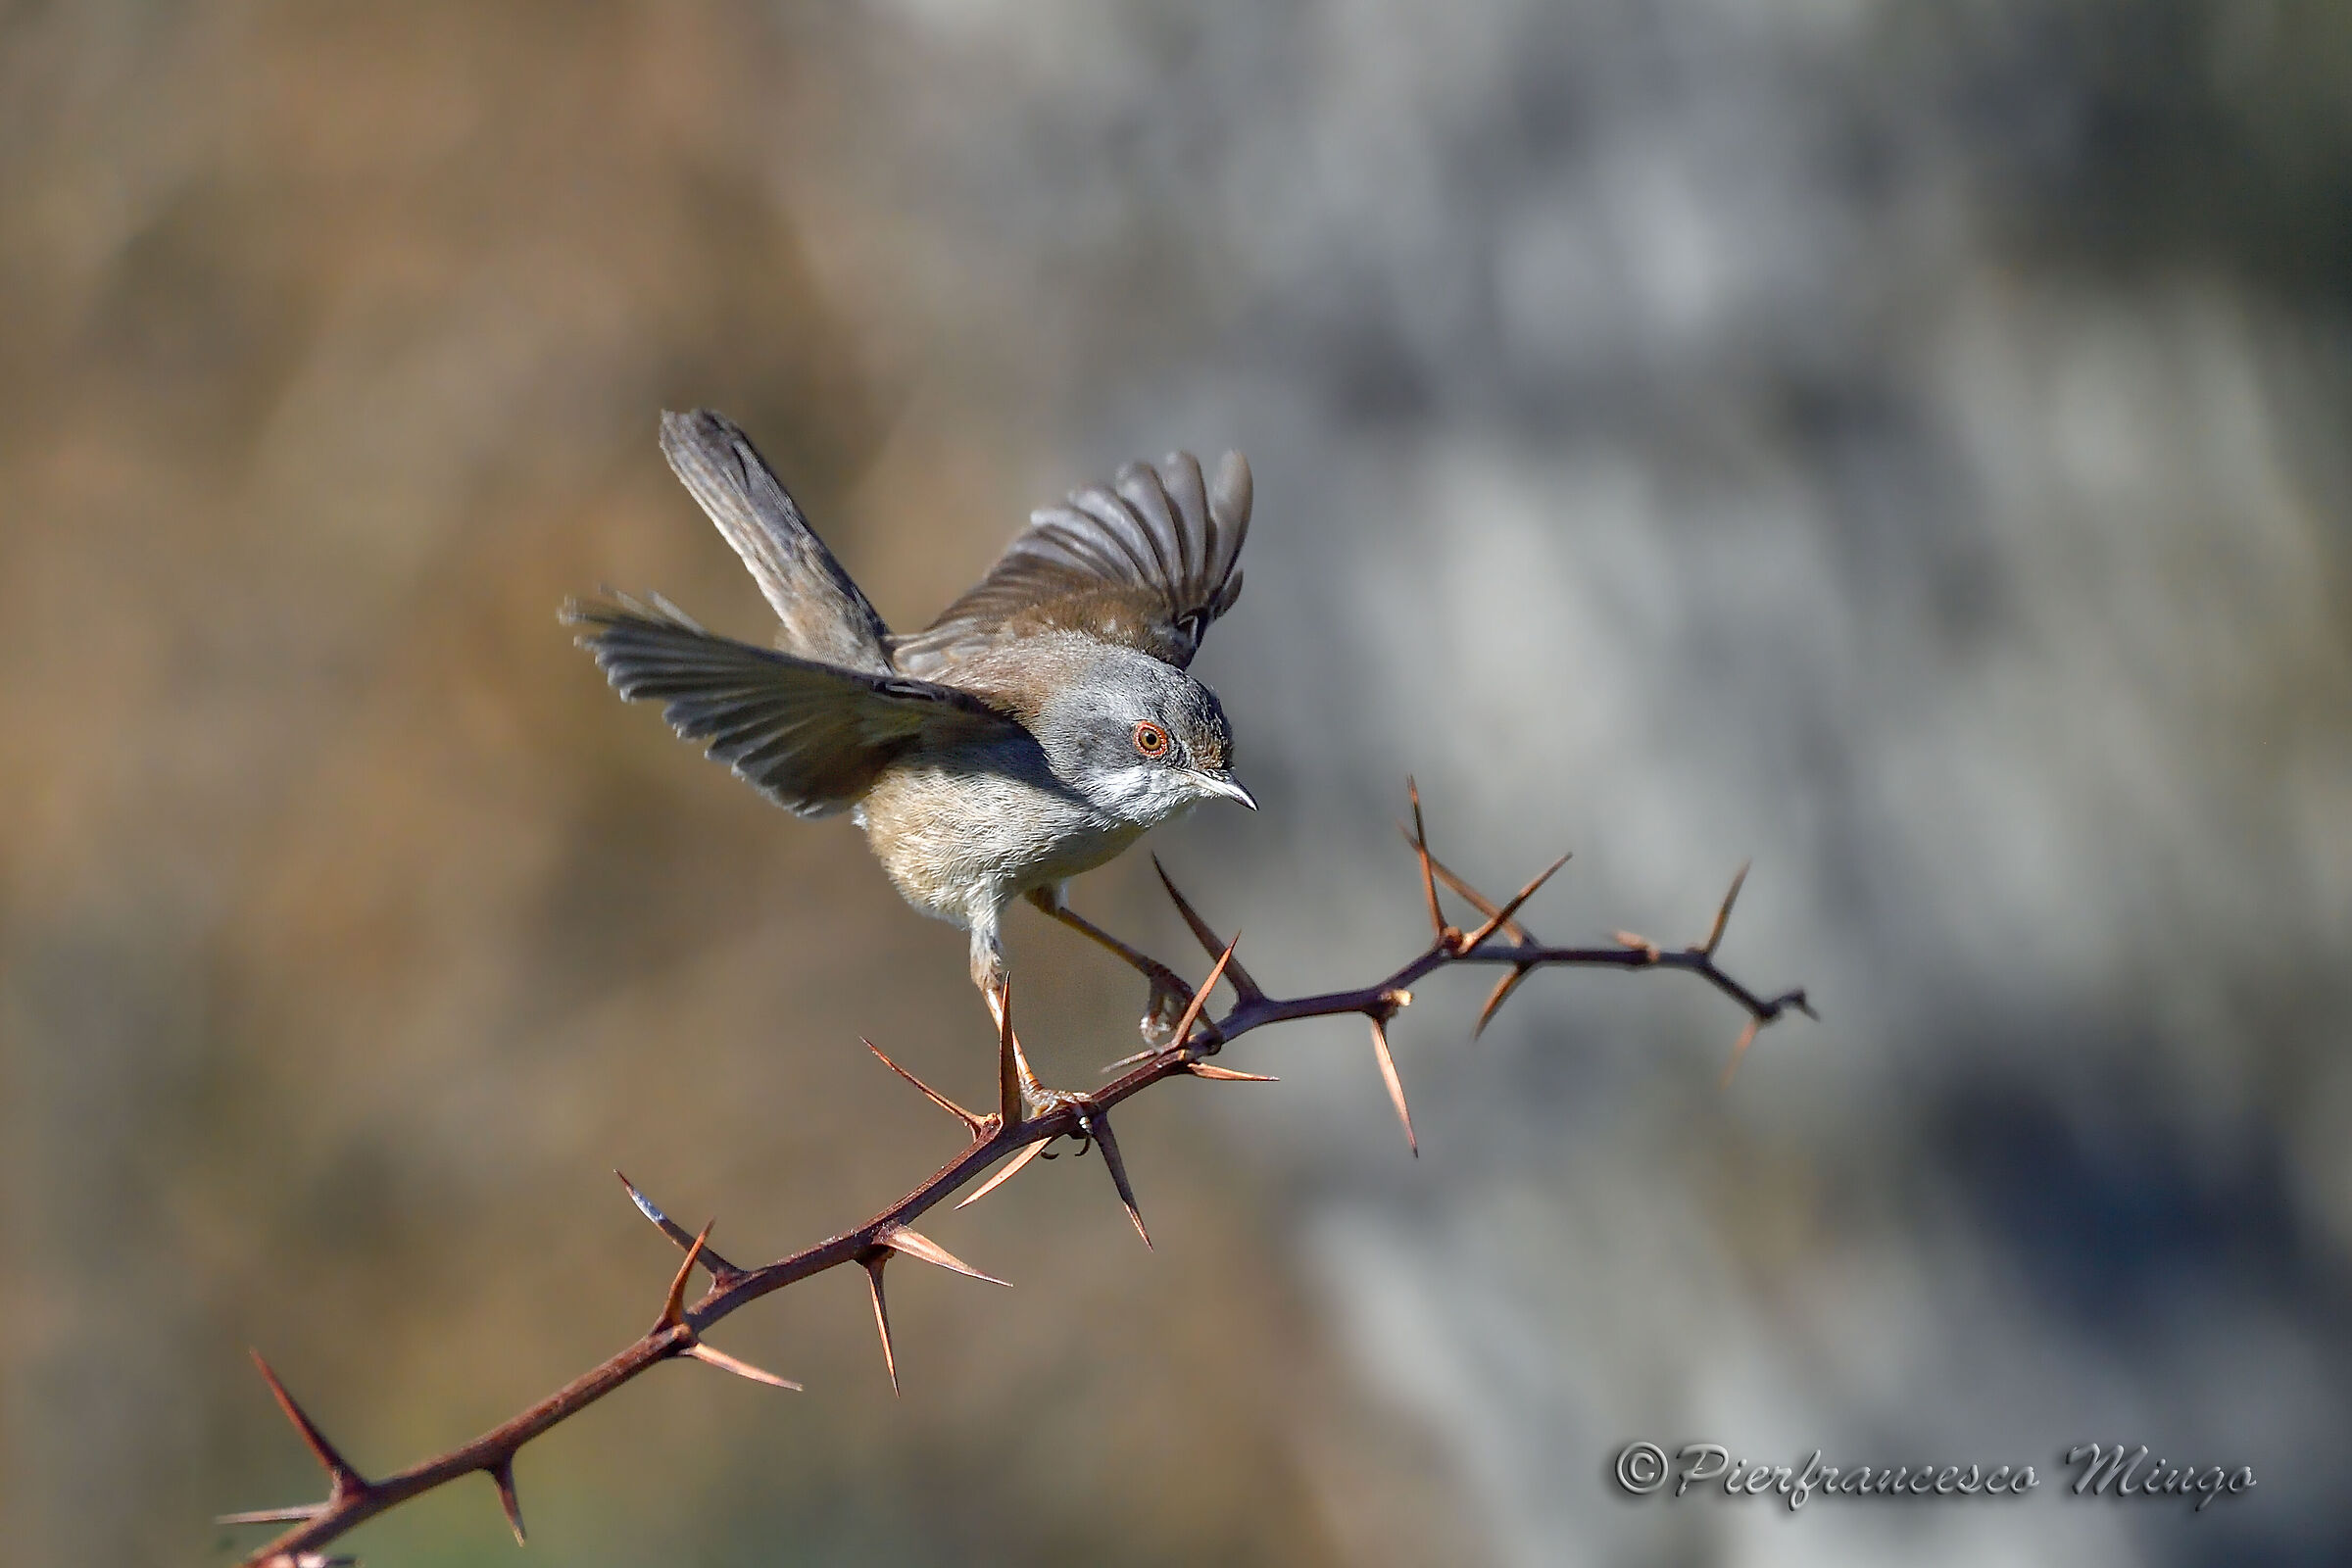 Female eyebler on landing...